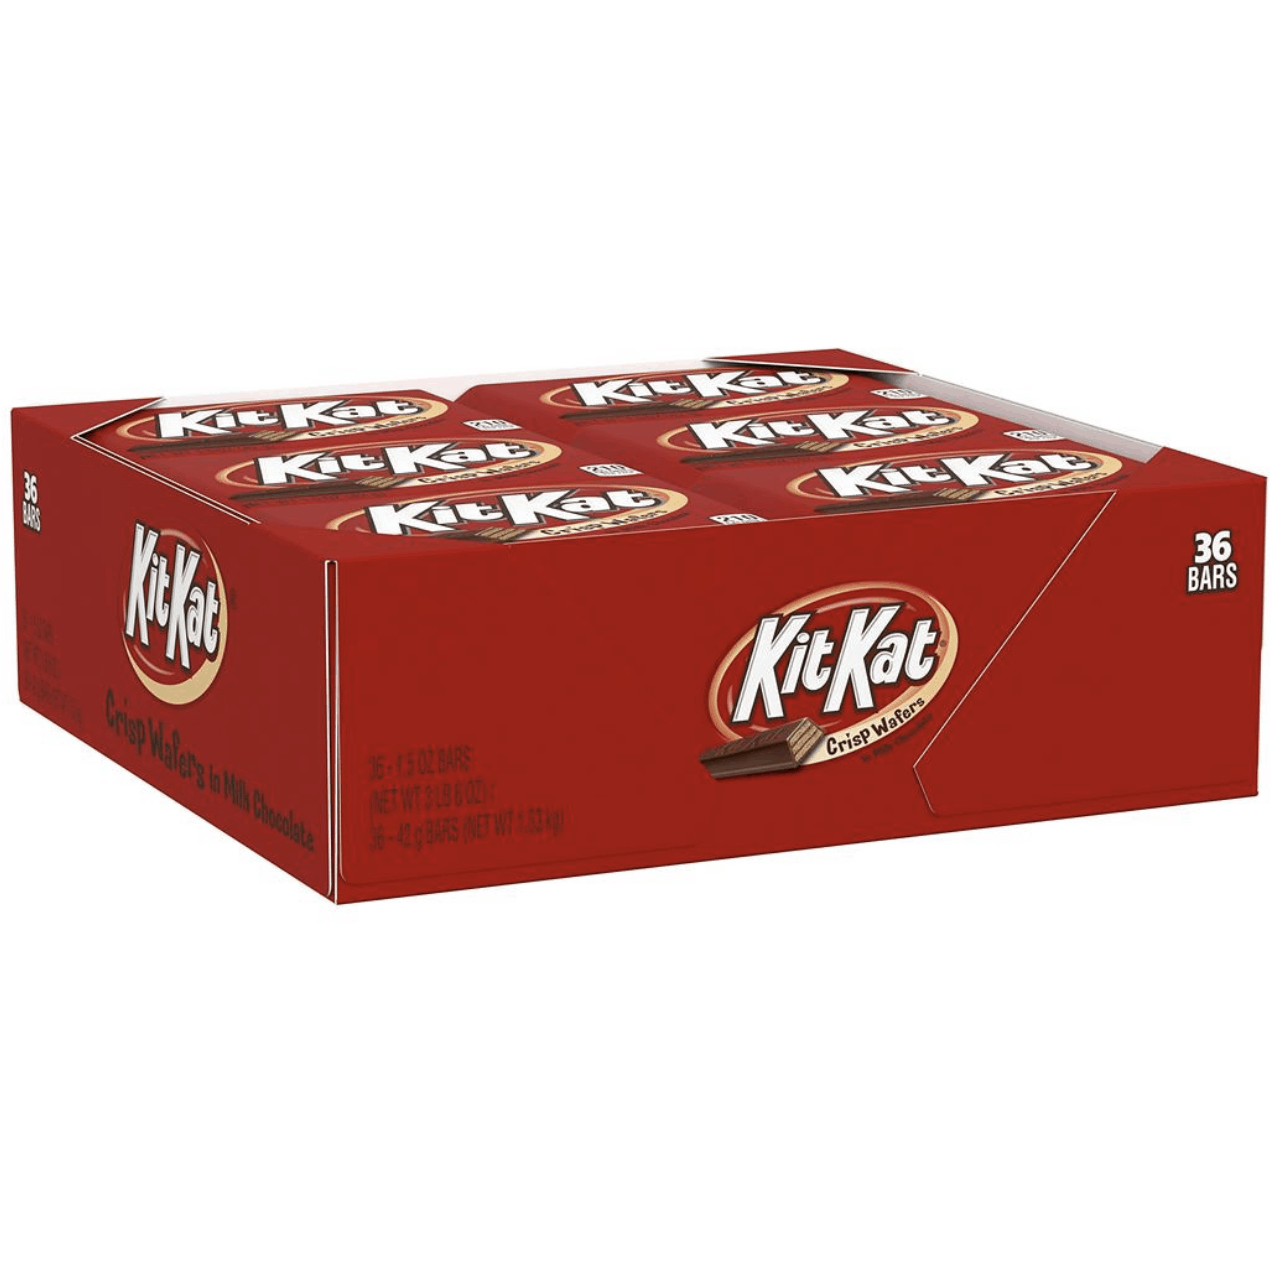 Hershey's Kit Kat Bars, 36 ct.